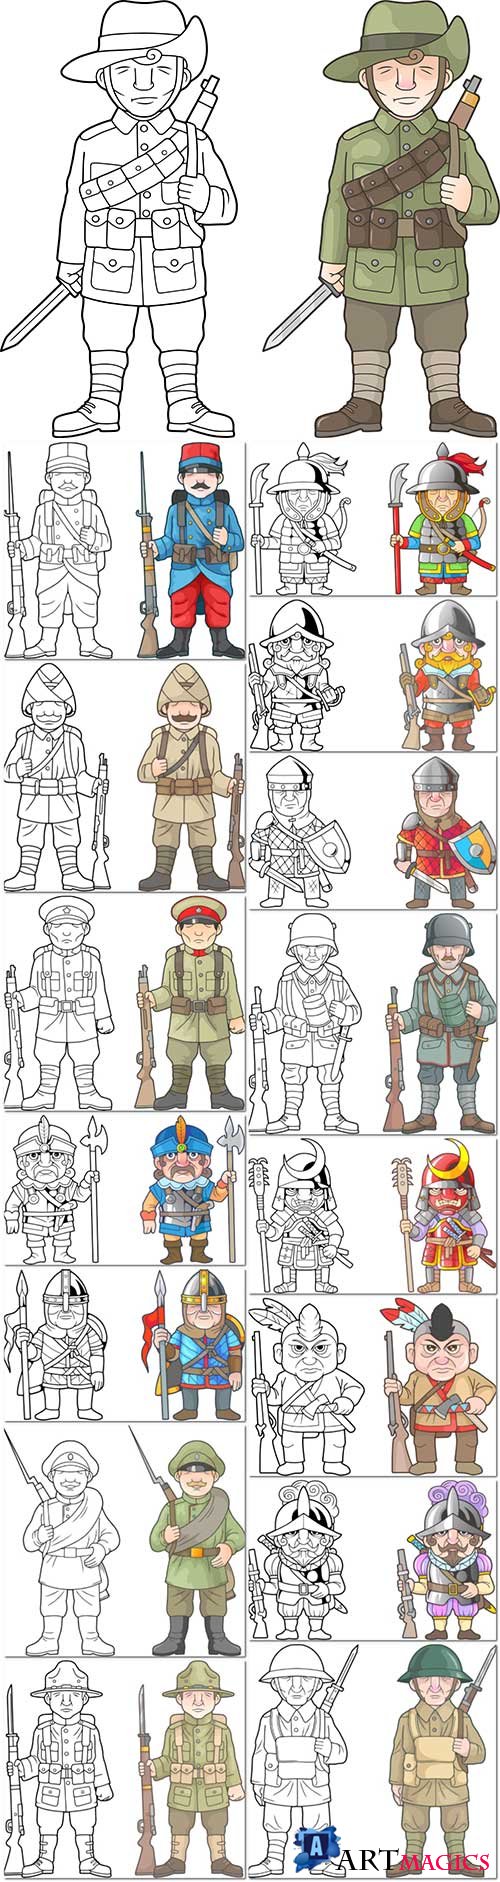 Cartoon soldier war premium vector